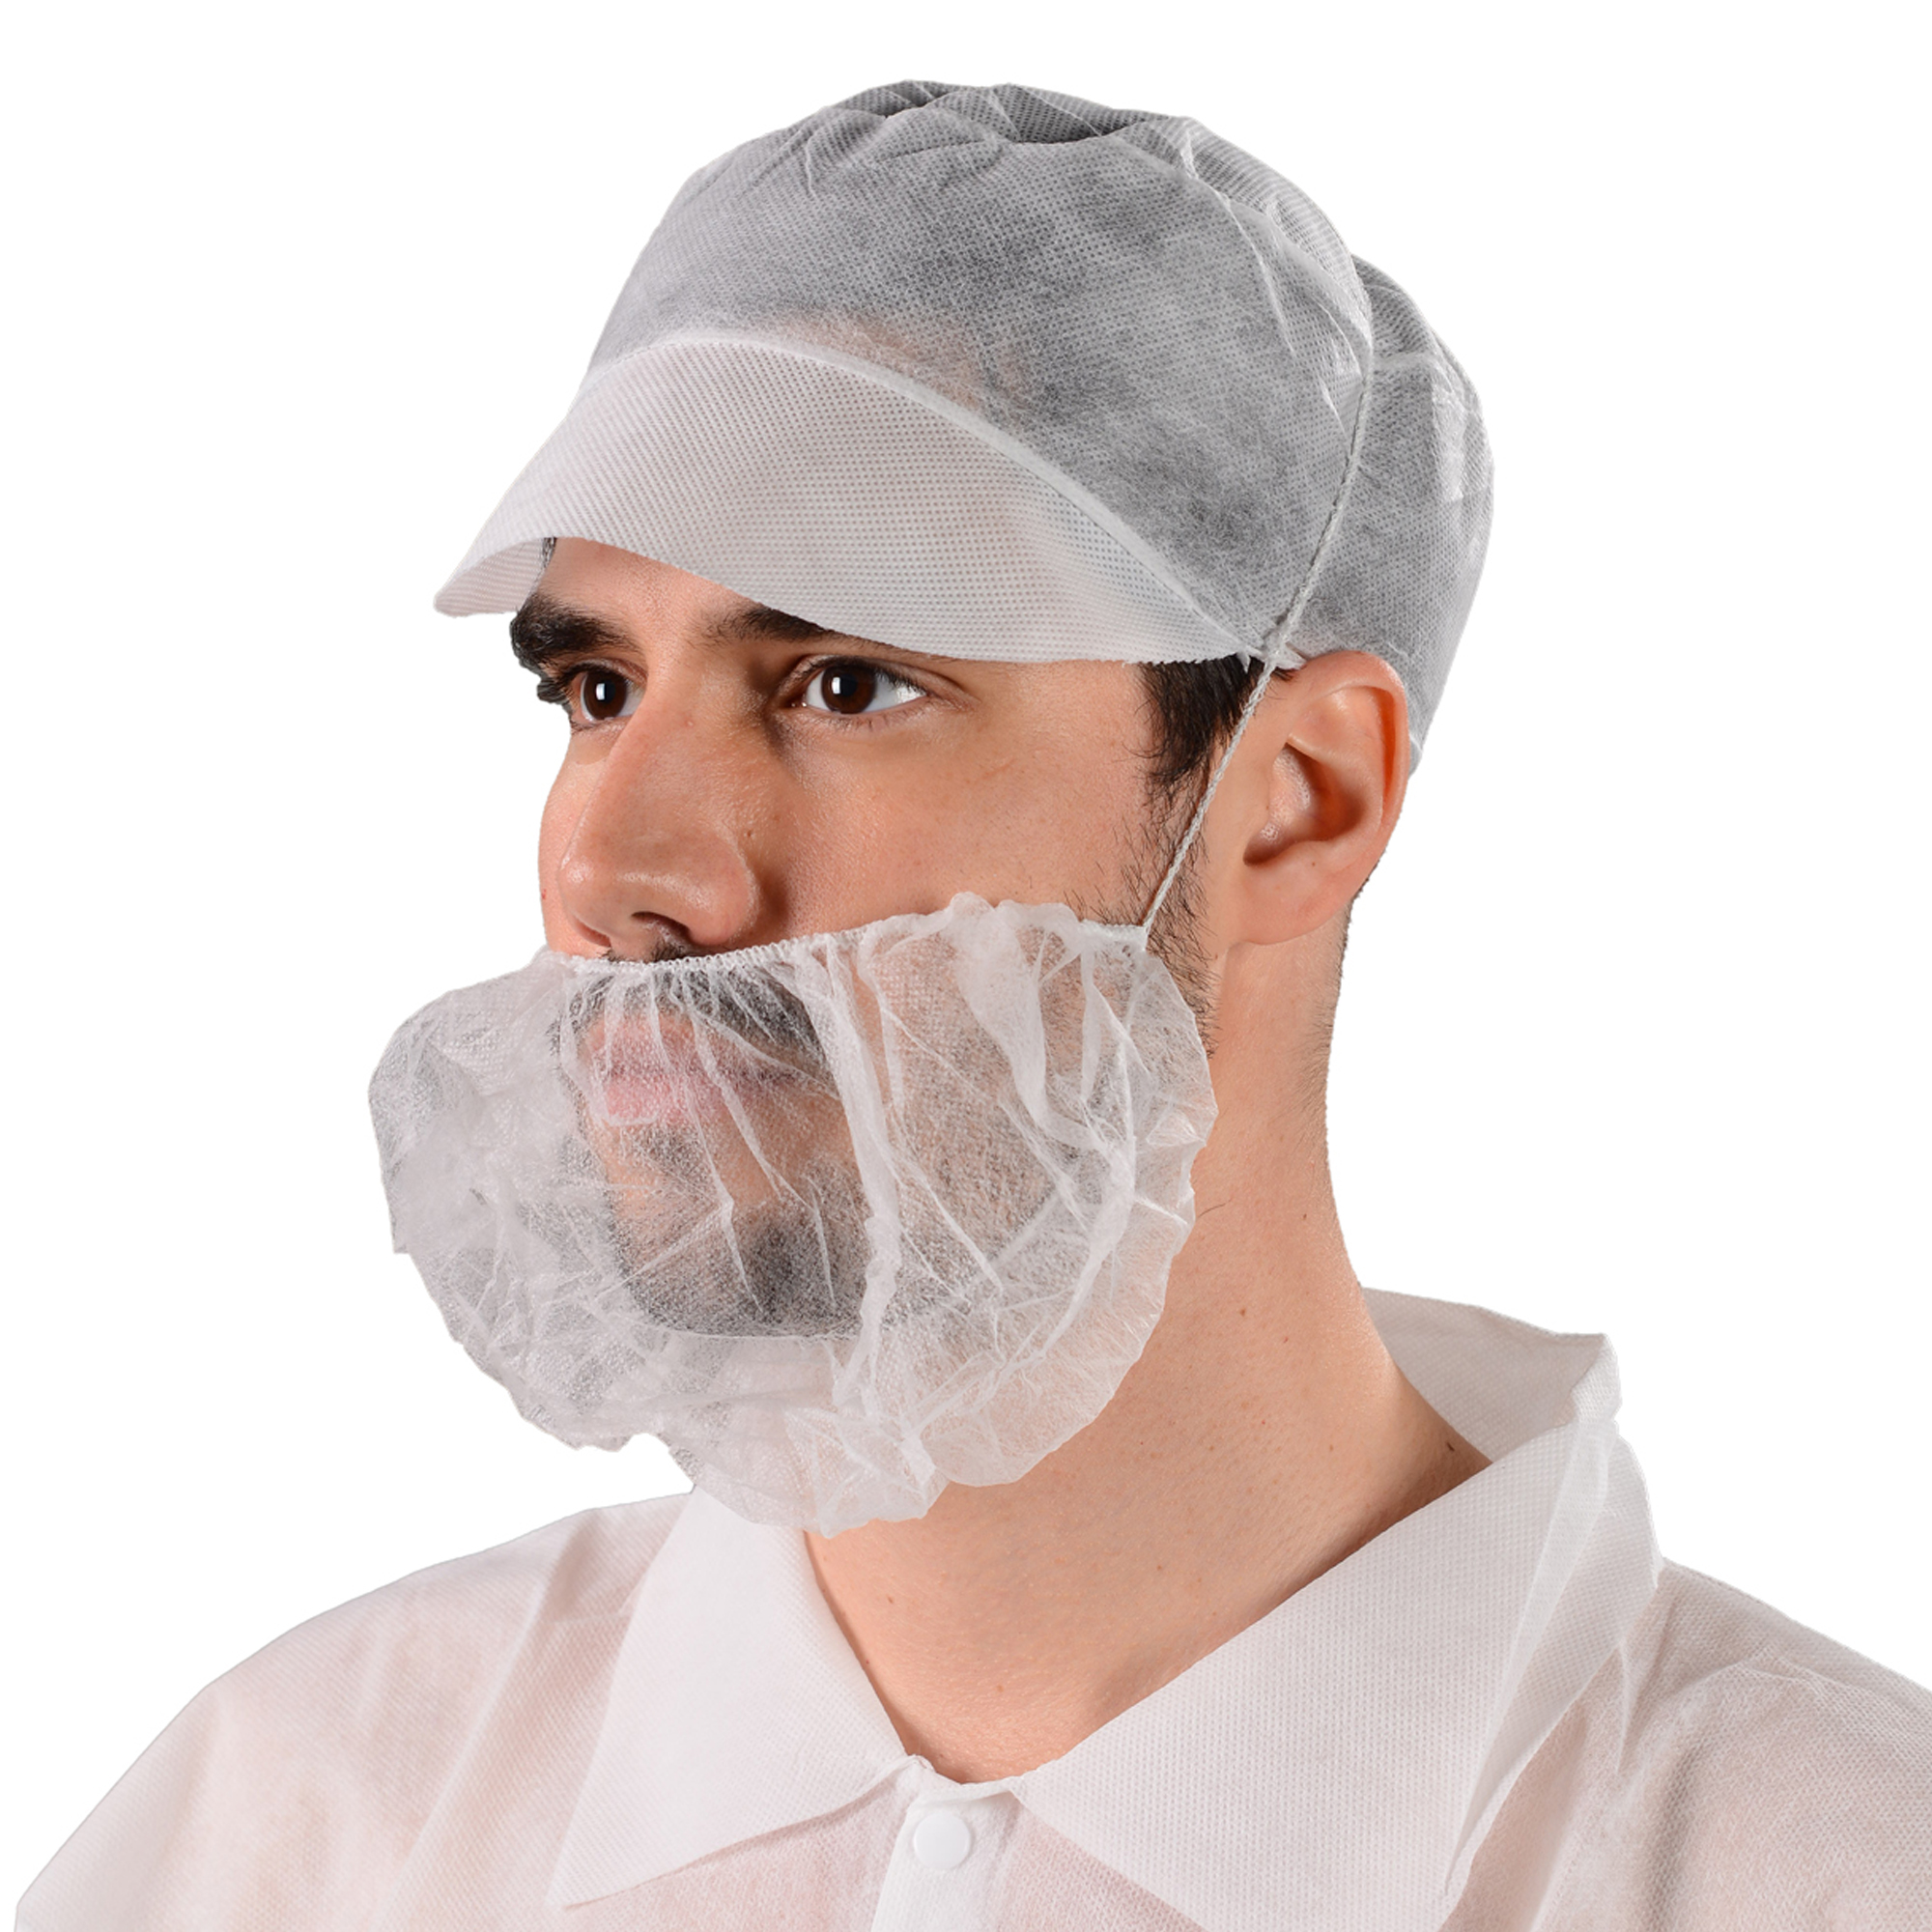 Topmed descartável pp não tecido capa de barba branca 10gsm indústria alimentícia laço único masculino com costela única à prova de poeira rede de cabelo barba